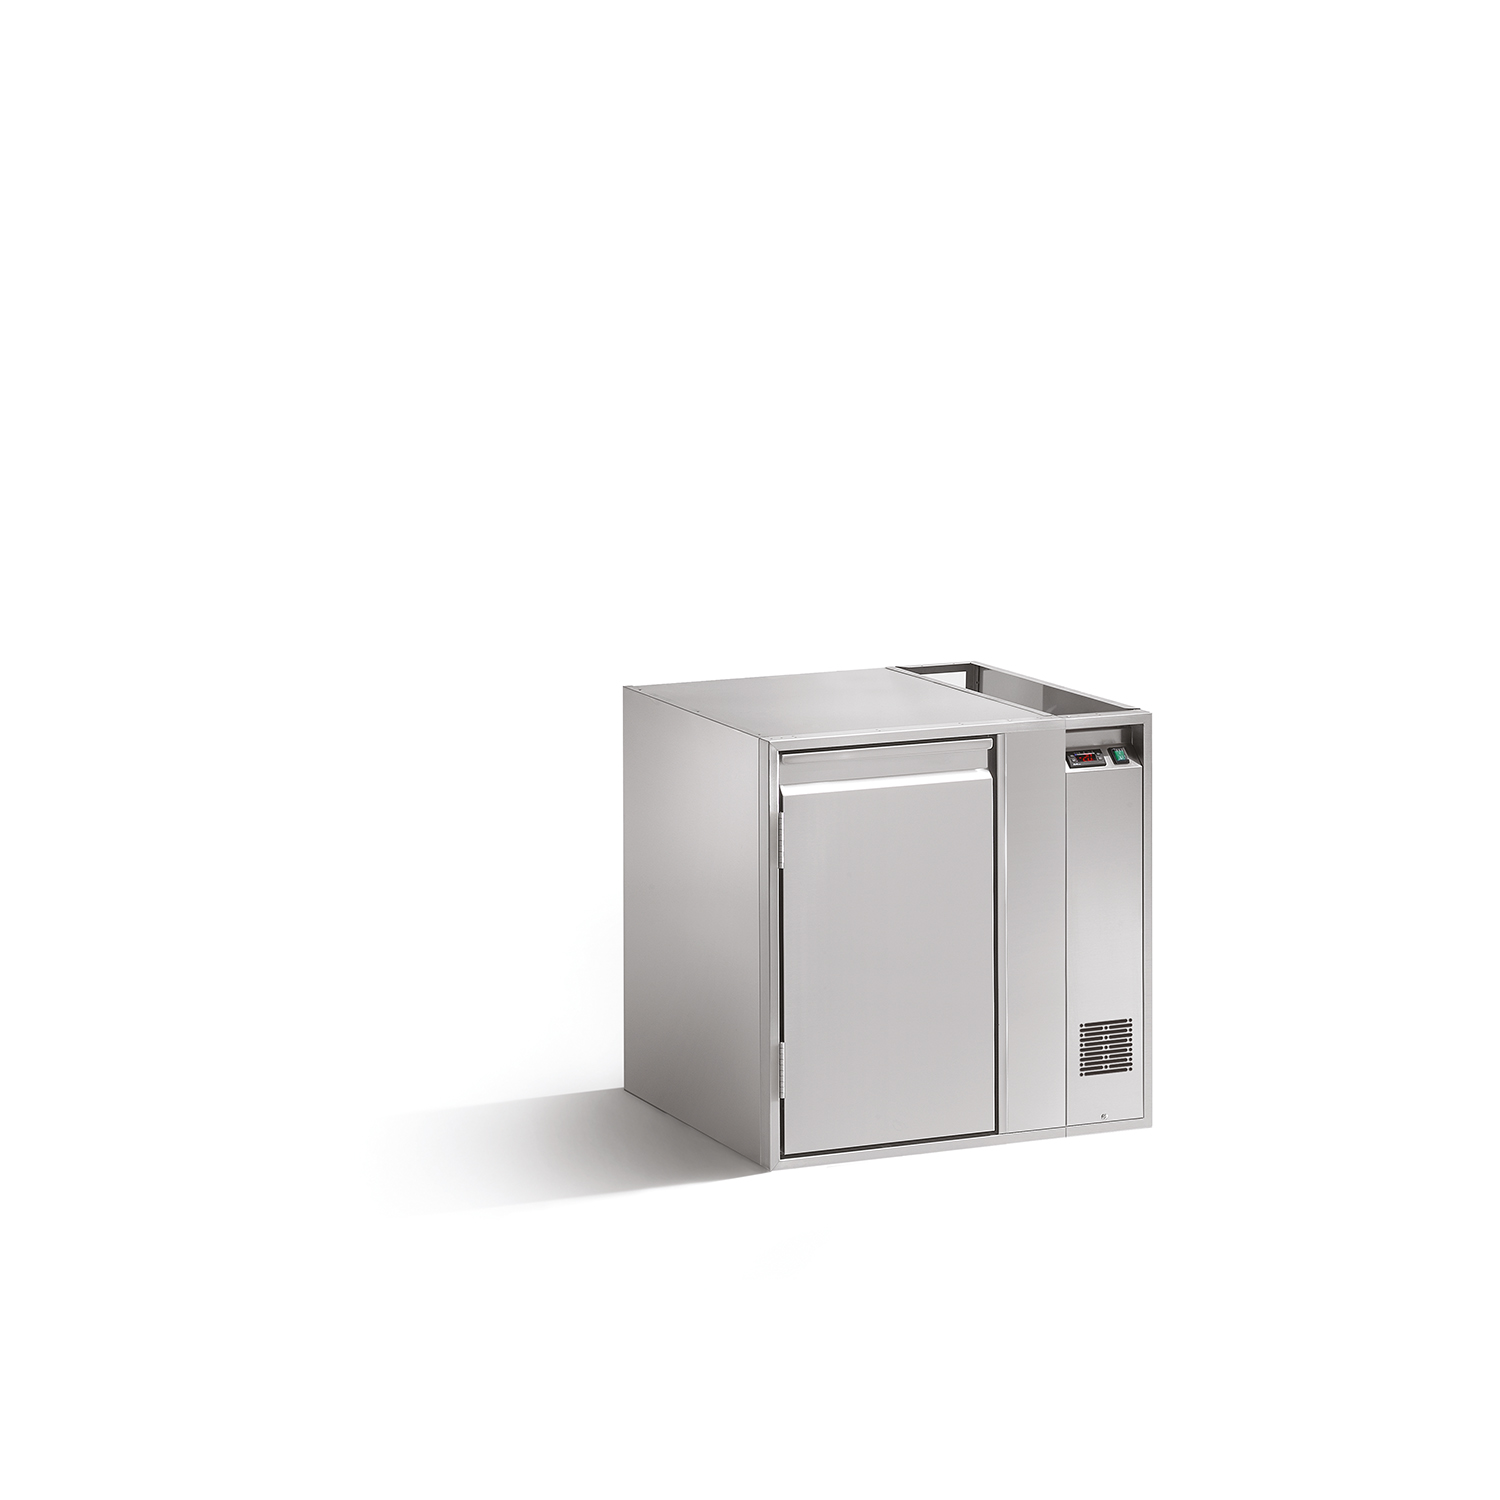 Tiefkühlunterbau GN PREMIUM, B 780 x T 660 x H 760 mm, mit 1 Kühlfach, zentralgekühlt mit Tauwasserverdunstung